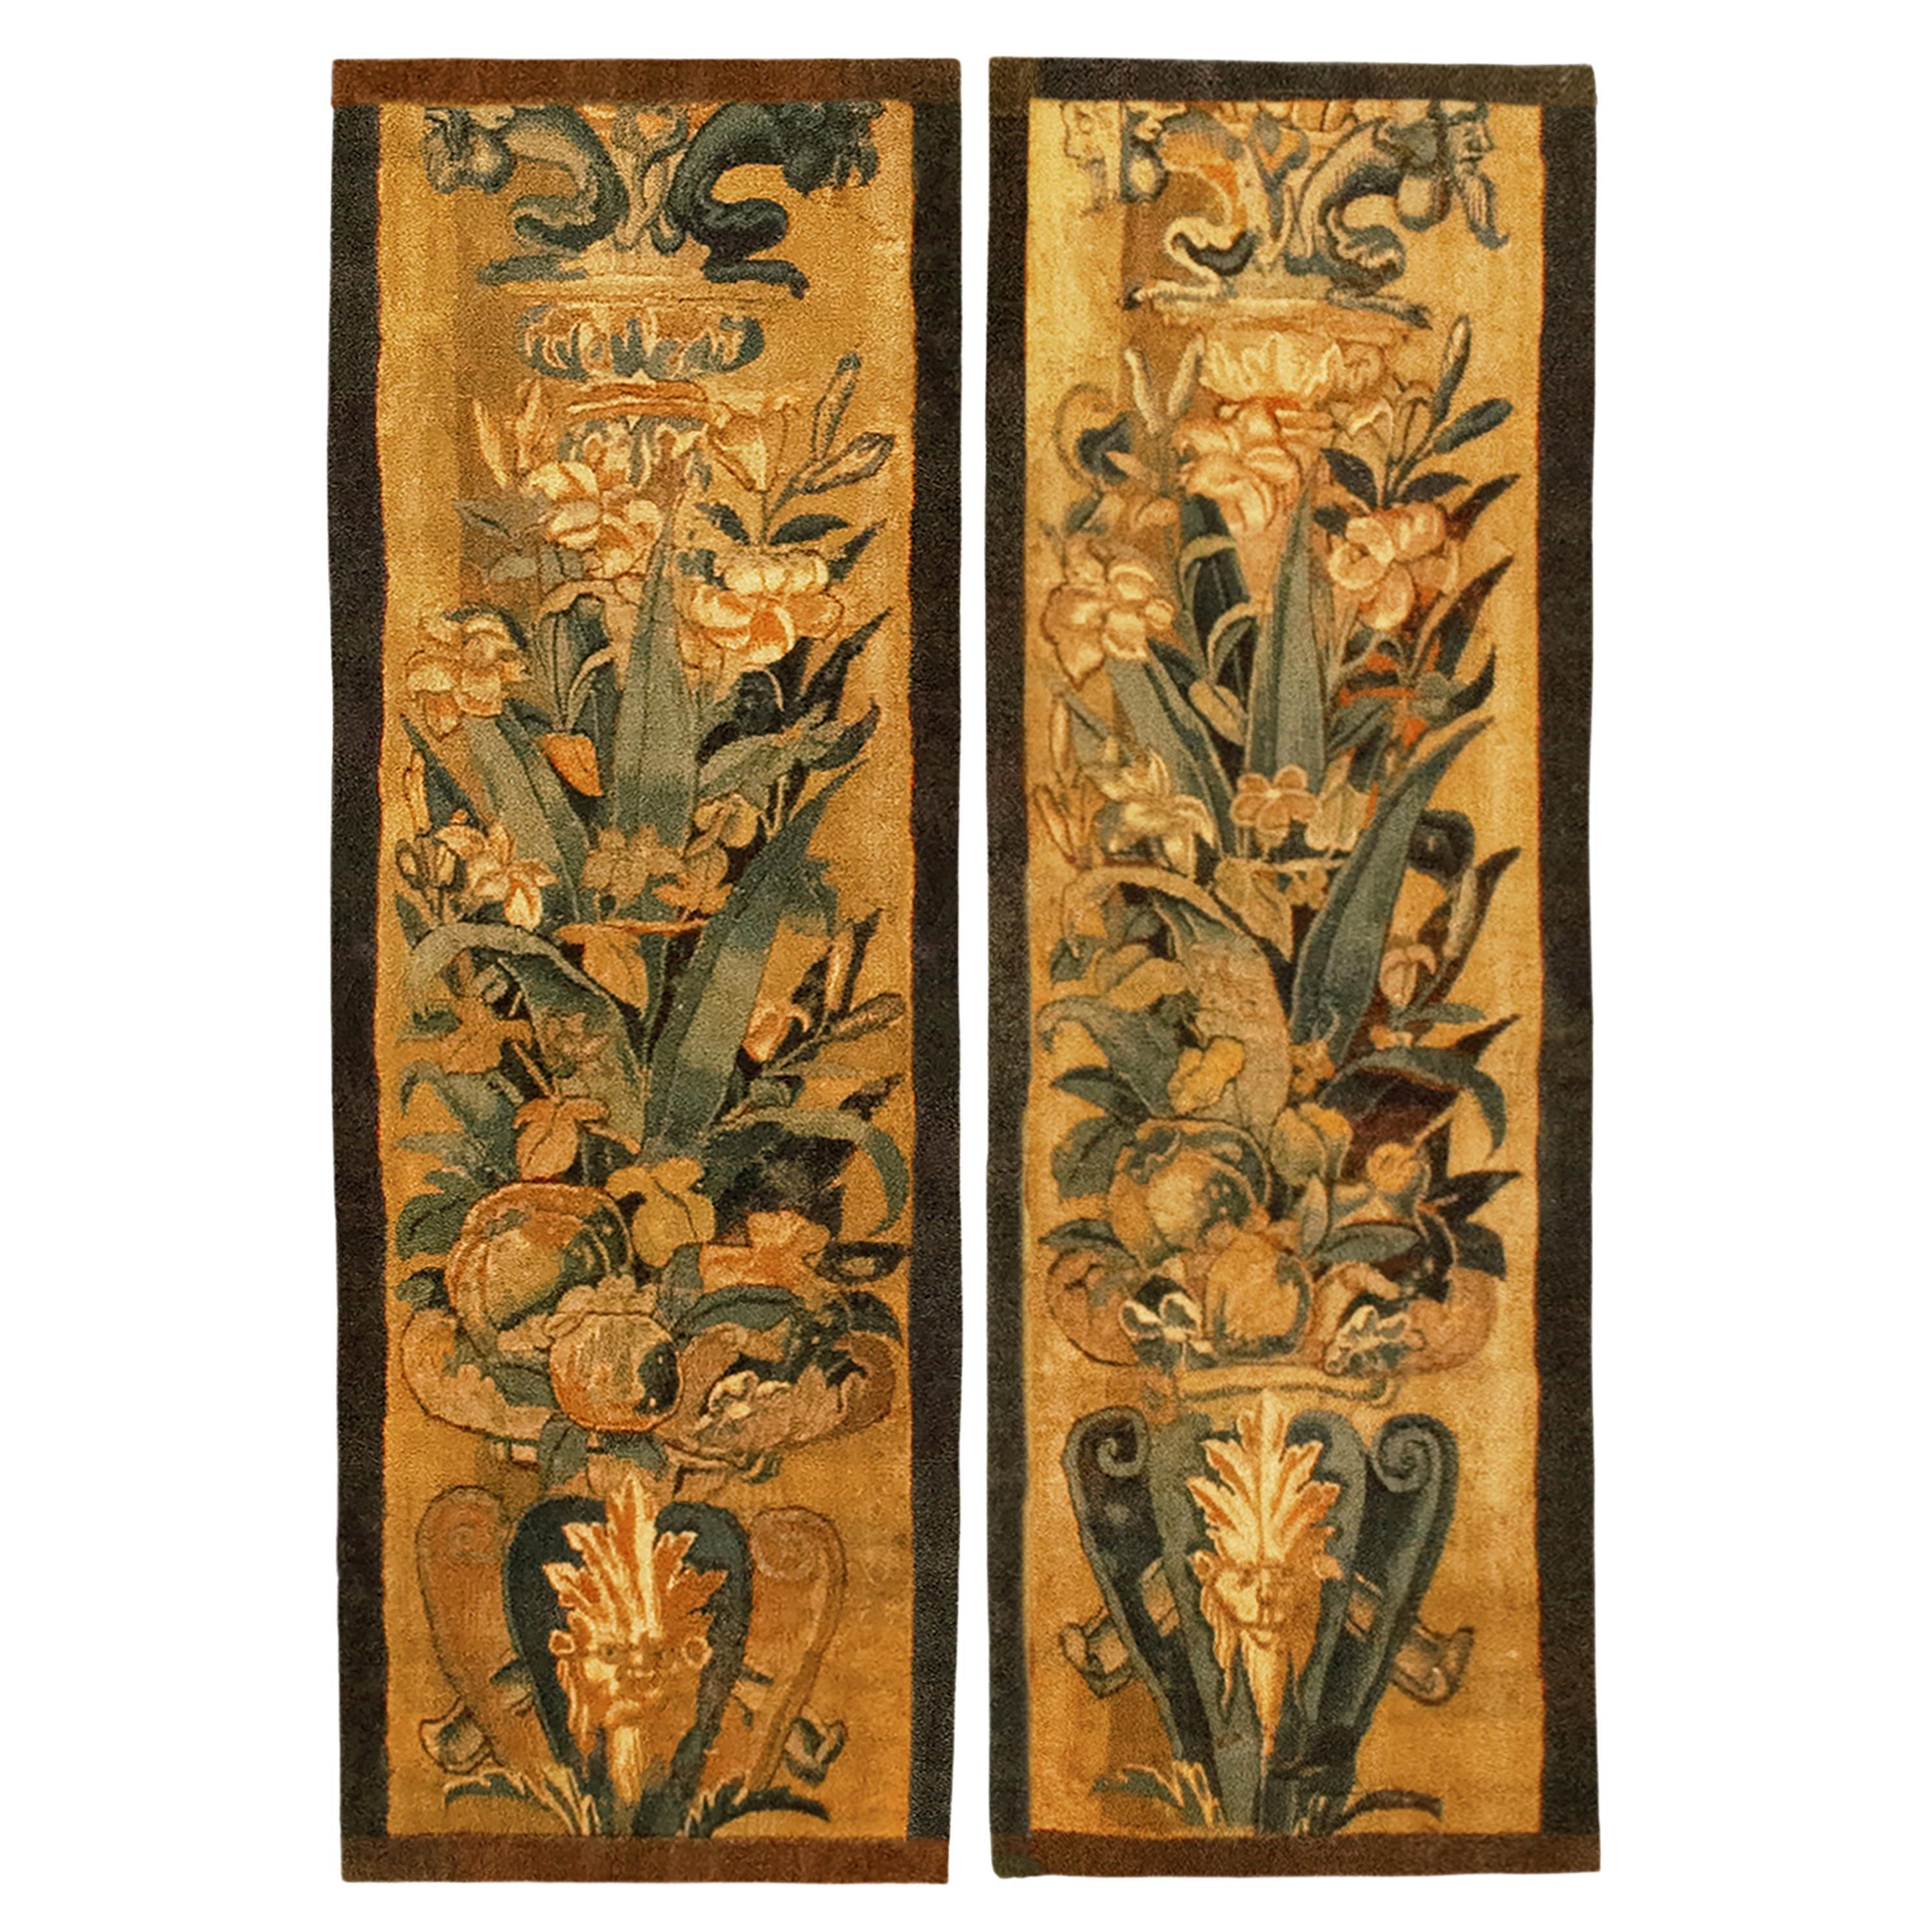 Vertikal orientiertes Paar historischer flämischer Wandteppiche aus dem späten 16.